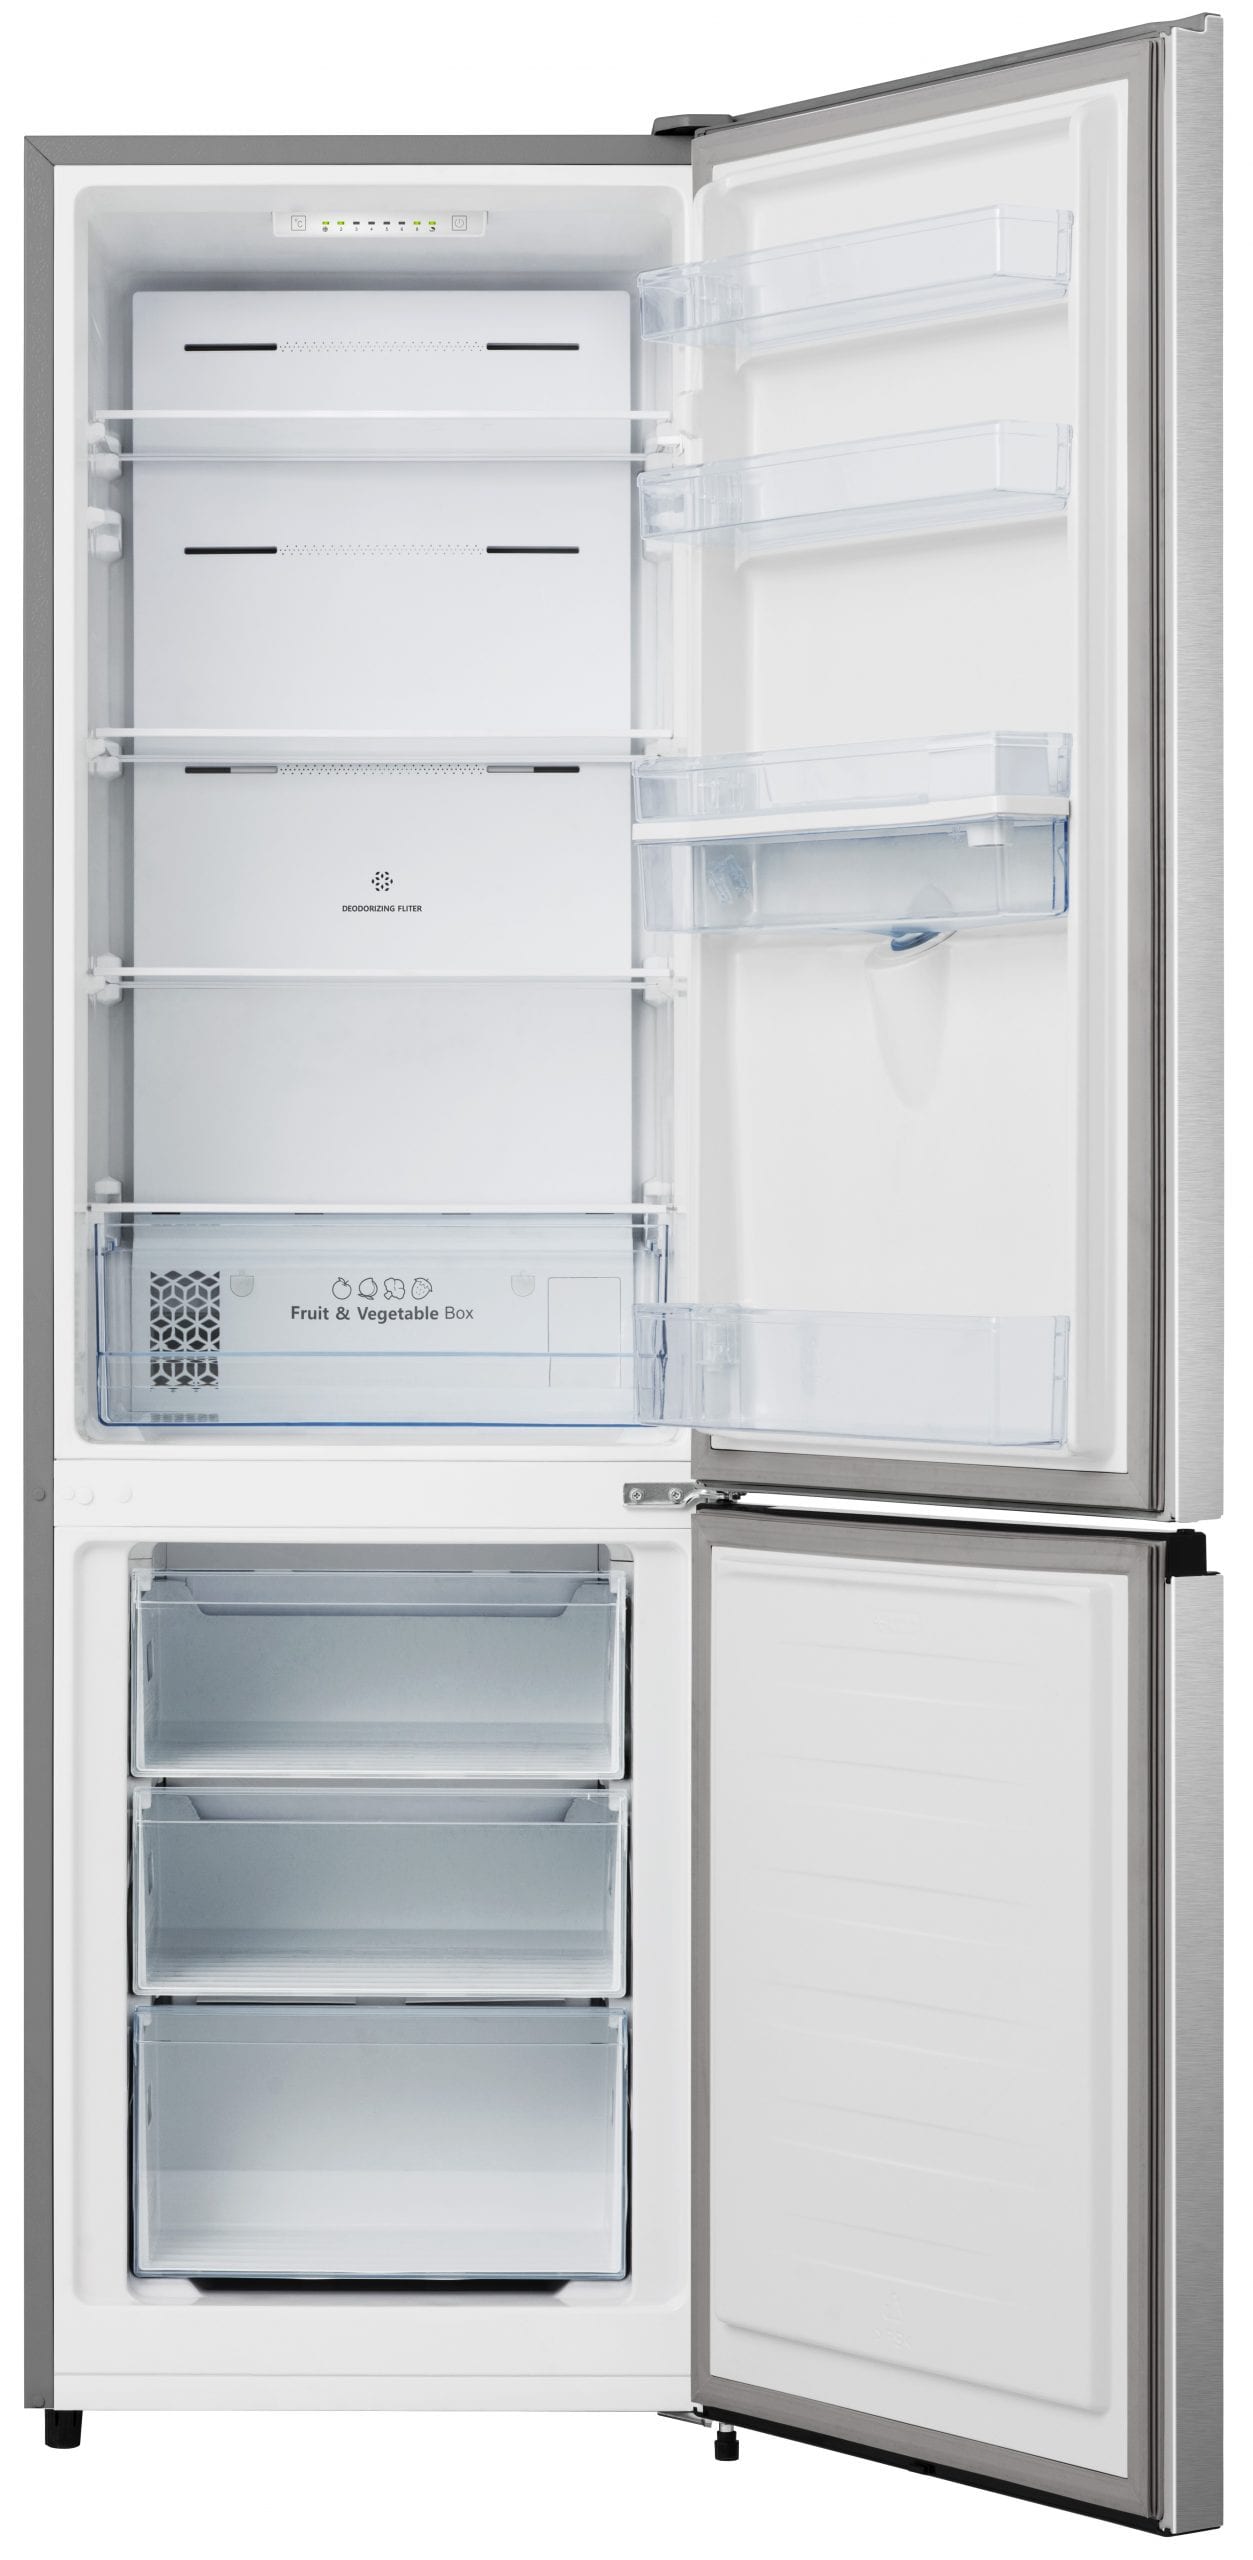 HISENSE Réfrigérateur combiné FCN255WDF, 255 L, Froid ventilé No frost, F  pas cher 